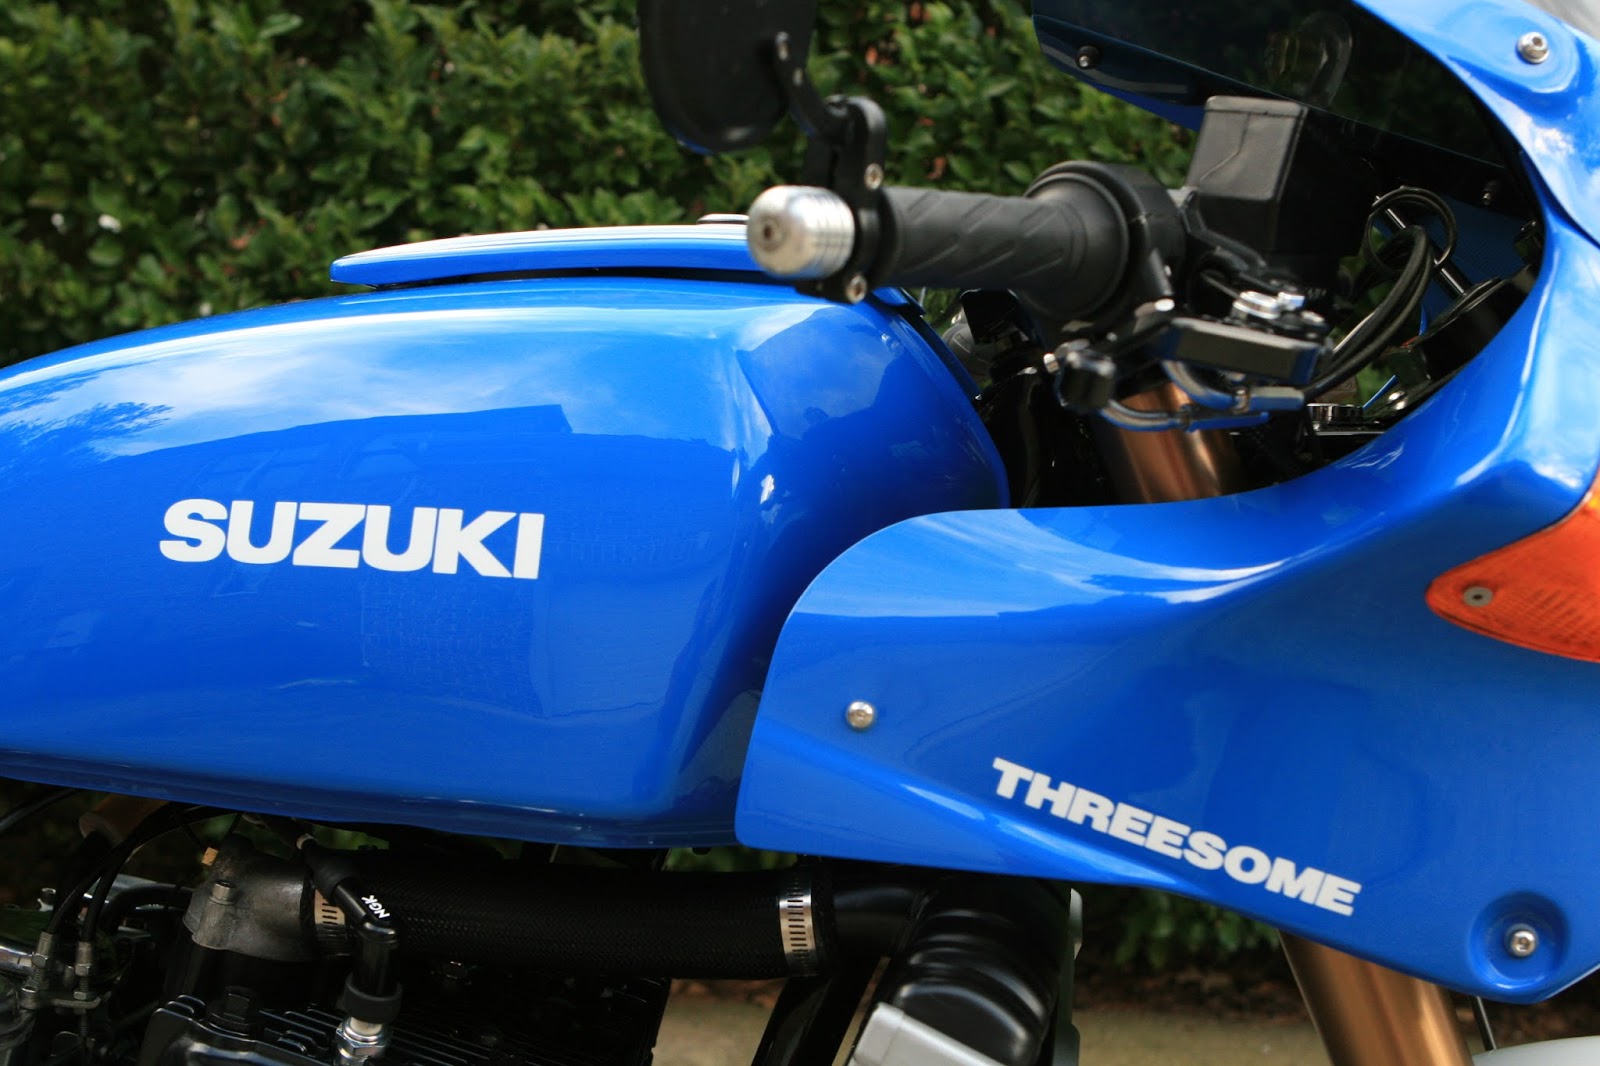 Suzuki GT750 Threesome - RocketGarage - Cafe Racer Magazine